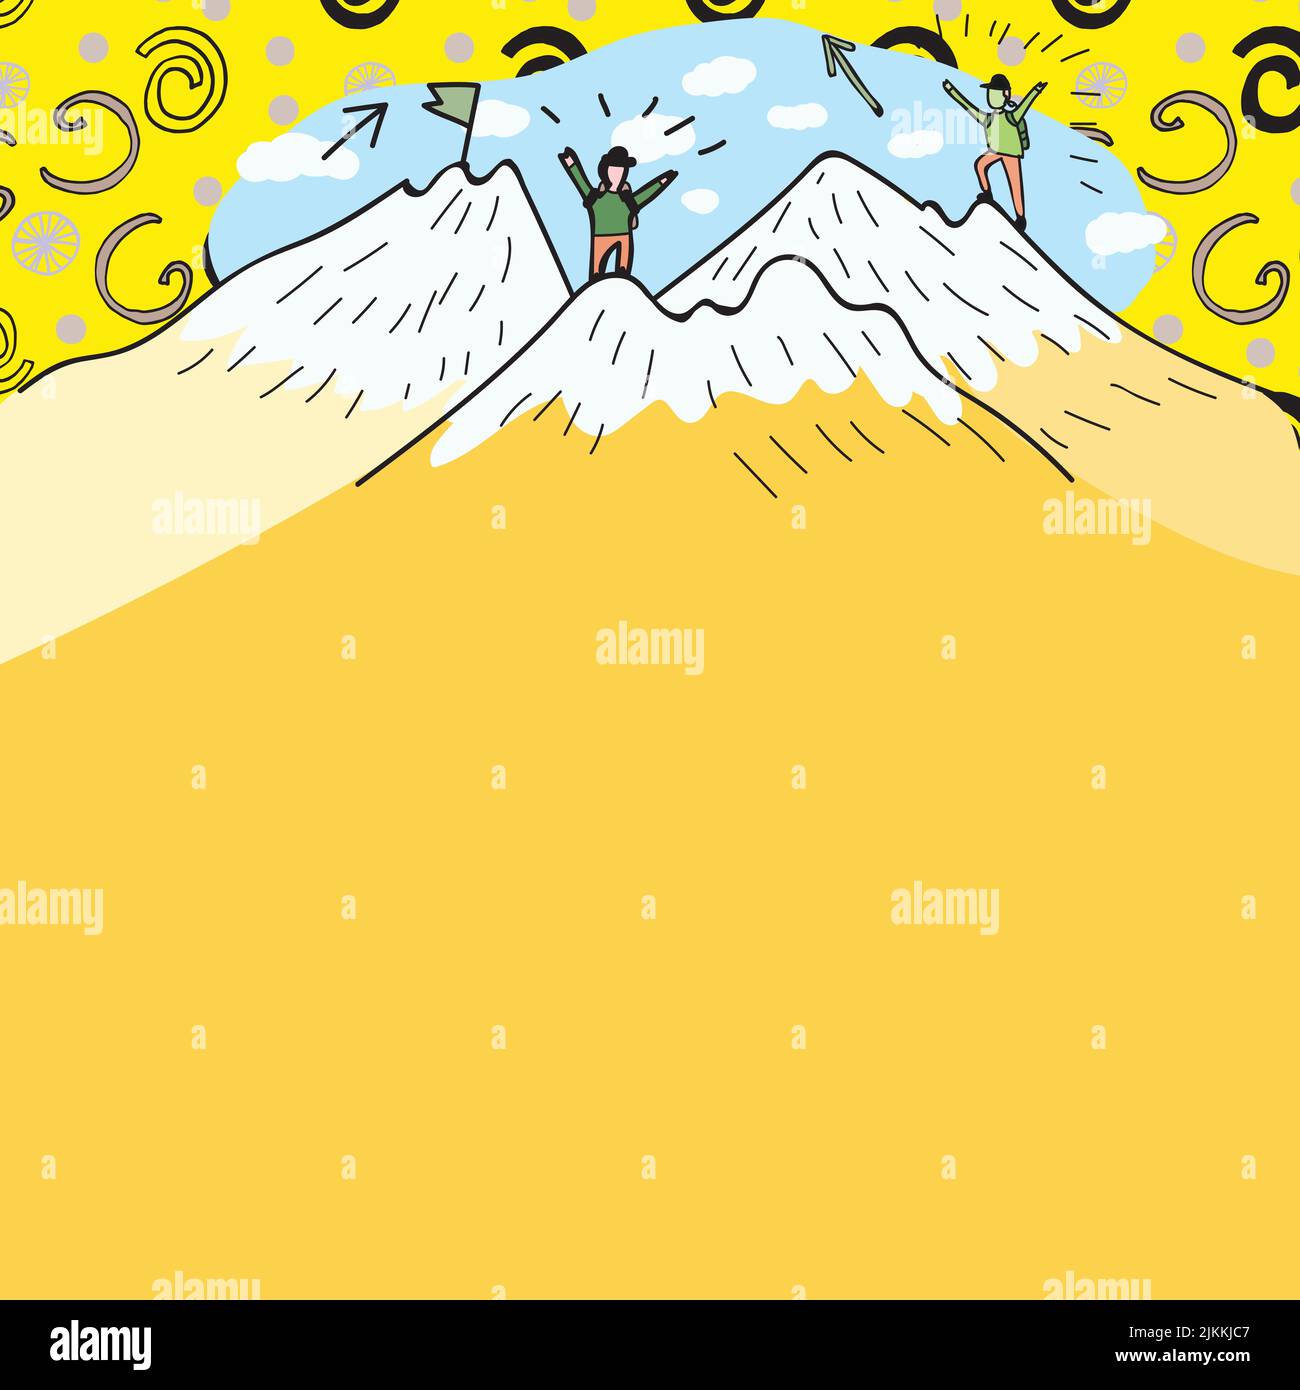 Message présenté sous les hommes randonnée au sommet des montagnes avec neige. Deux randonneurs grimpant sur les falaises pour atteindre Un but. Grimpeurs qui monte avec les nuages dedans Illustration de Vecteur